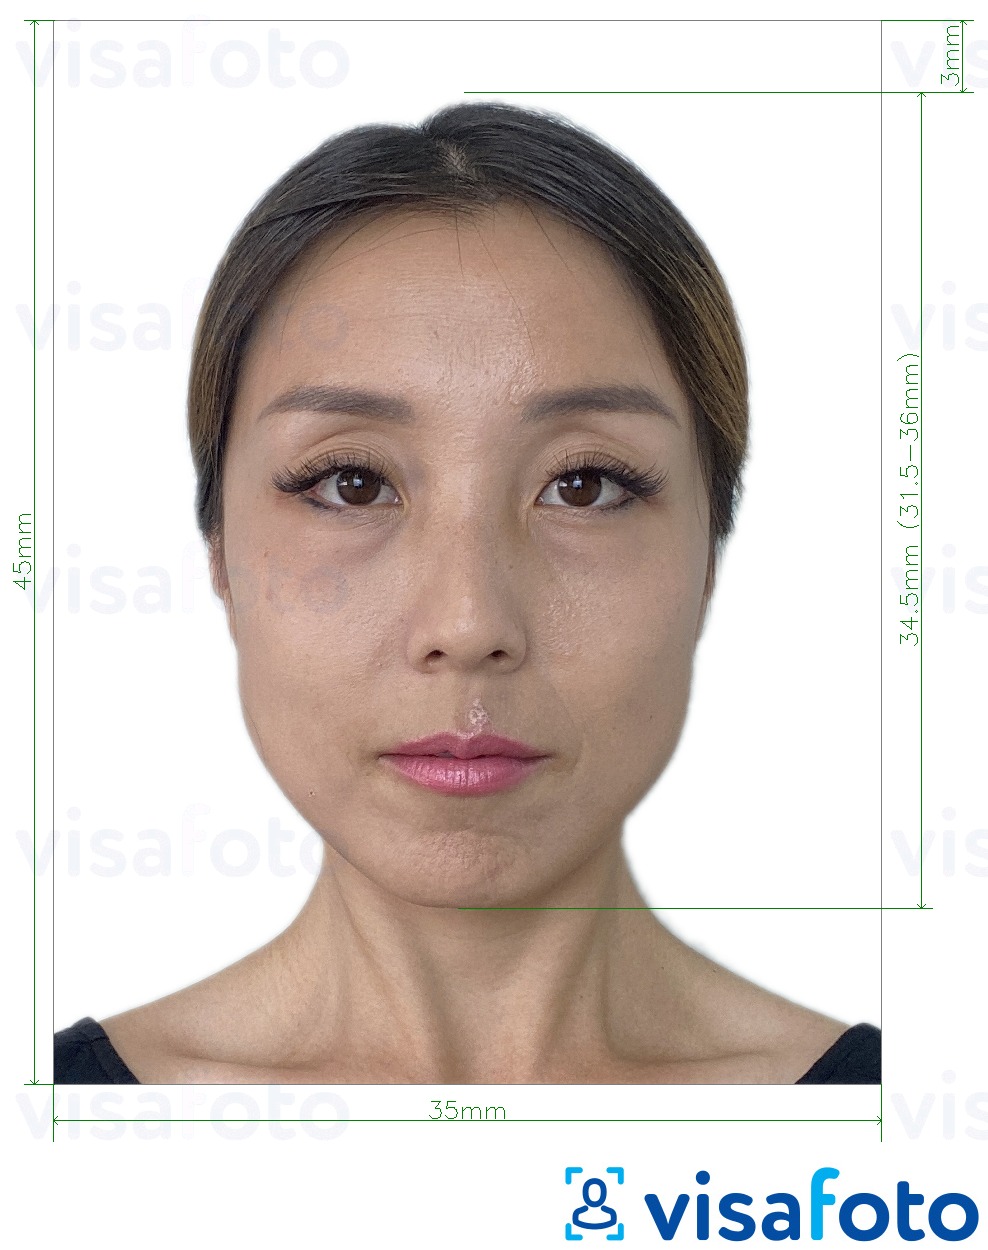 Príklad fotografie pre Taiwan Visa 35x45 mm (3,5 x 4,5 cm) s presnou špecifikáciou veľkosti